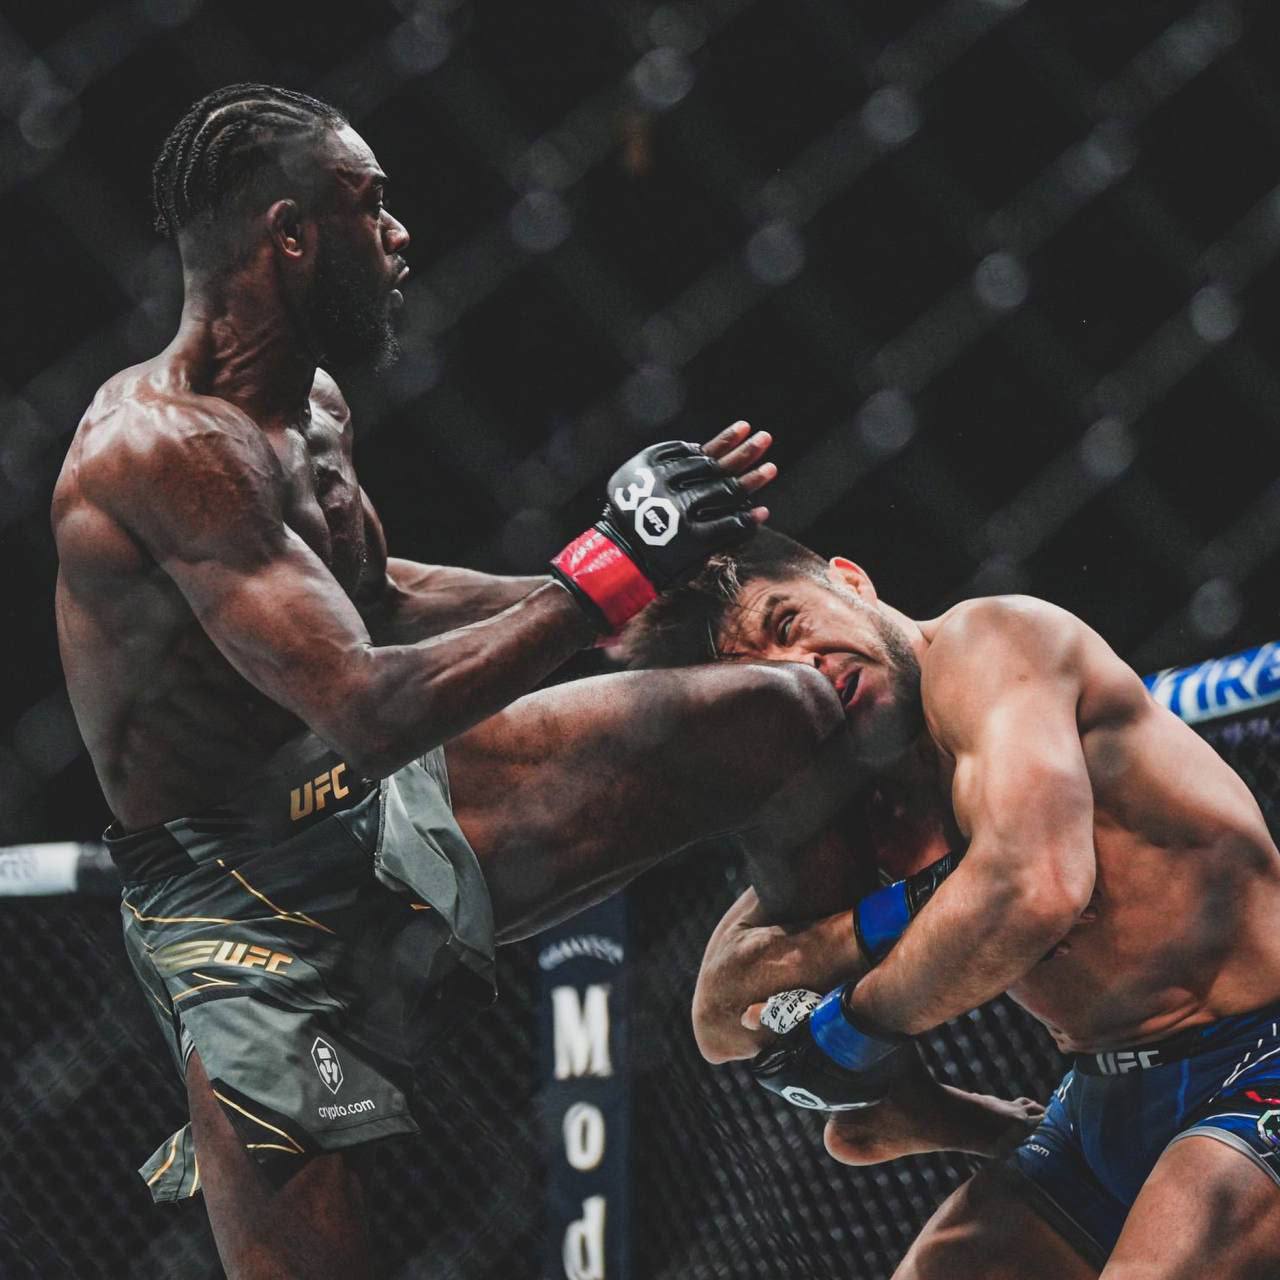 نتایج UFC 288 | پیروزی آلجامین استرلینگ مقابل هنری سجودو